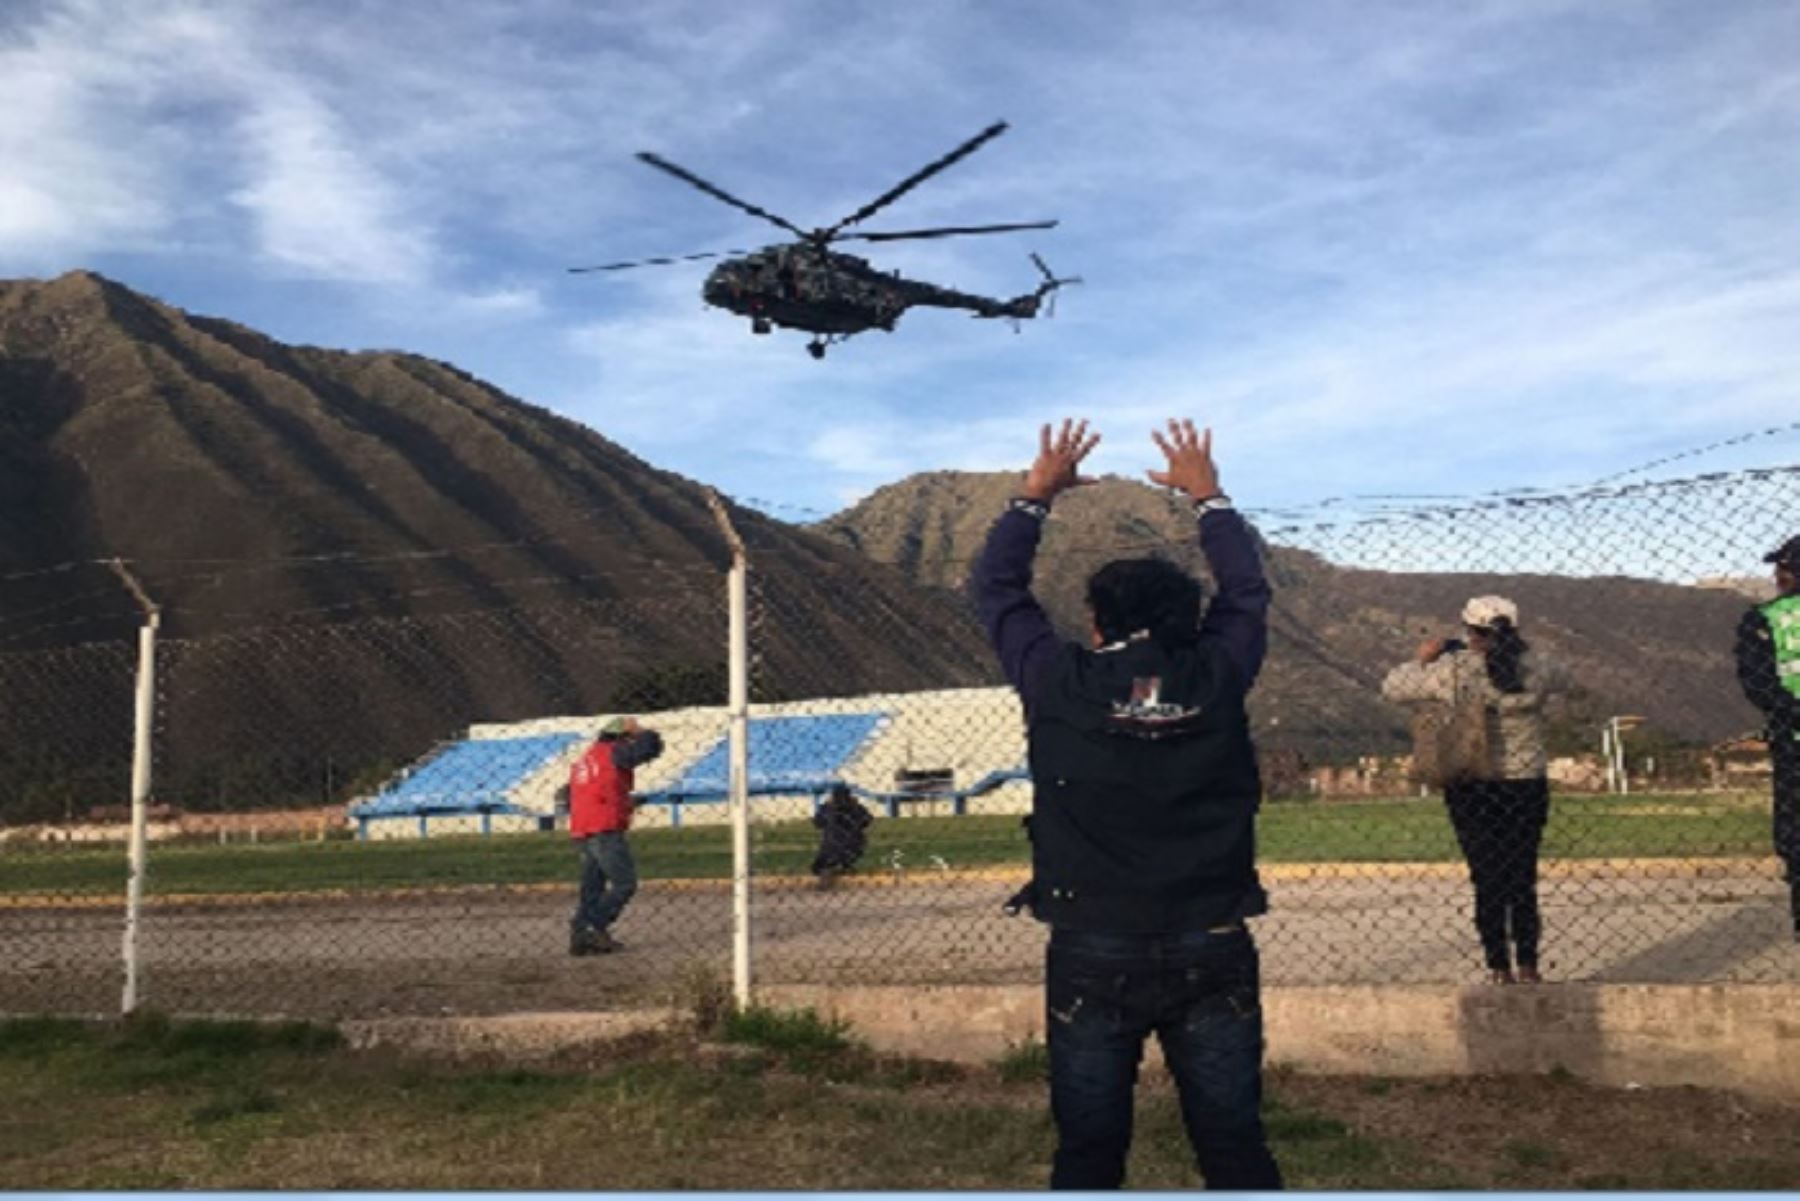 El material electoral no pudo arribar el lunes a la ciudad de Quillabamba por el mal clima que impidió el sobrevuelo de un helicóptero de las Fuerzas Armadas. Foto: Cortesía.